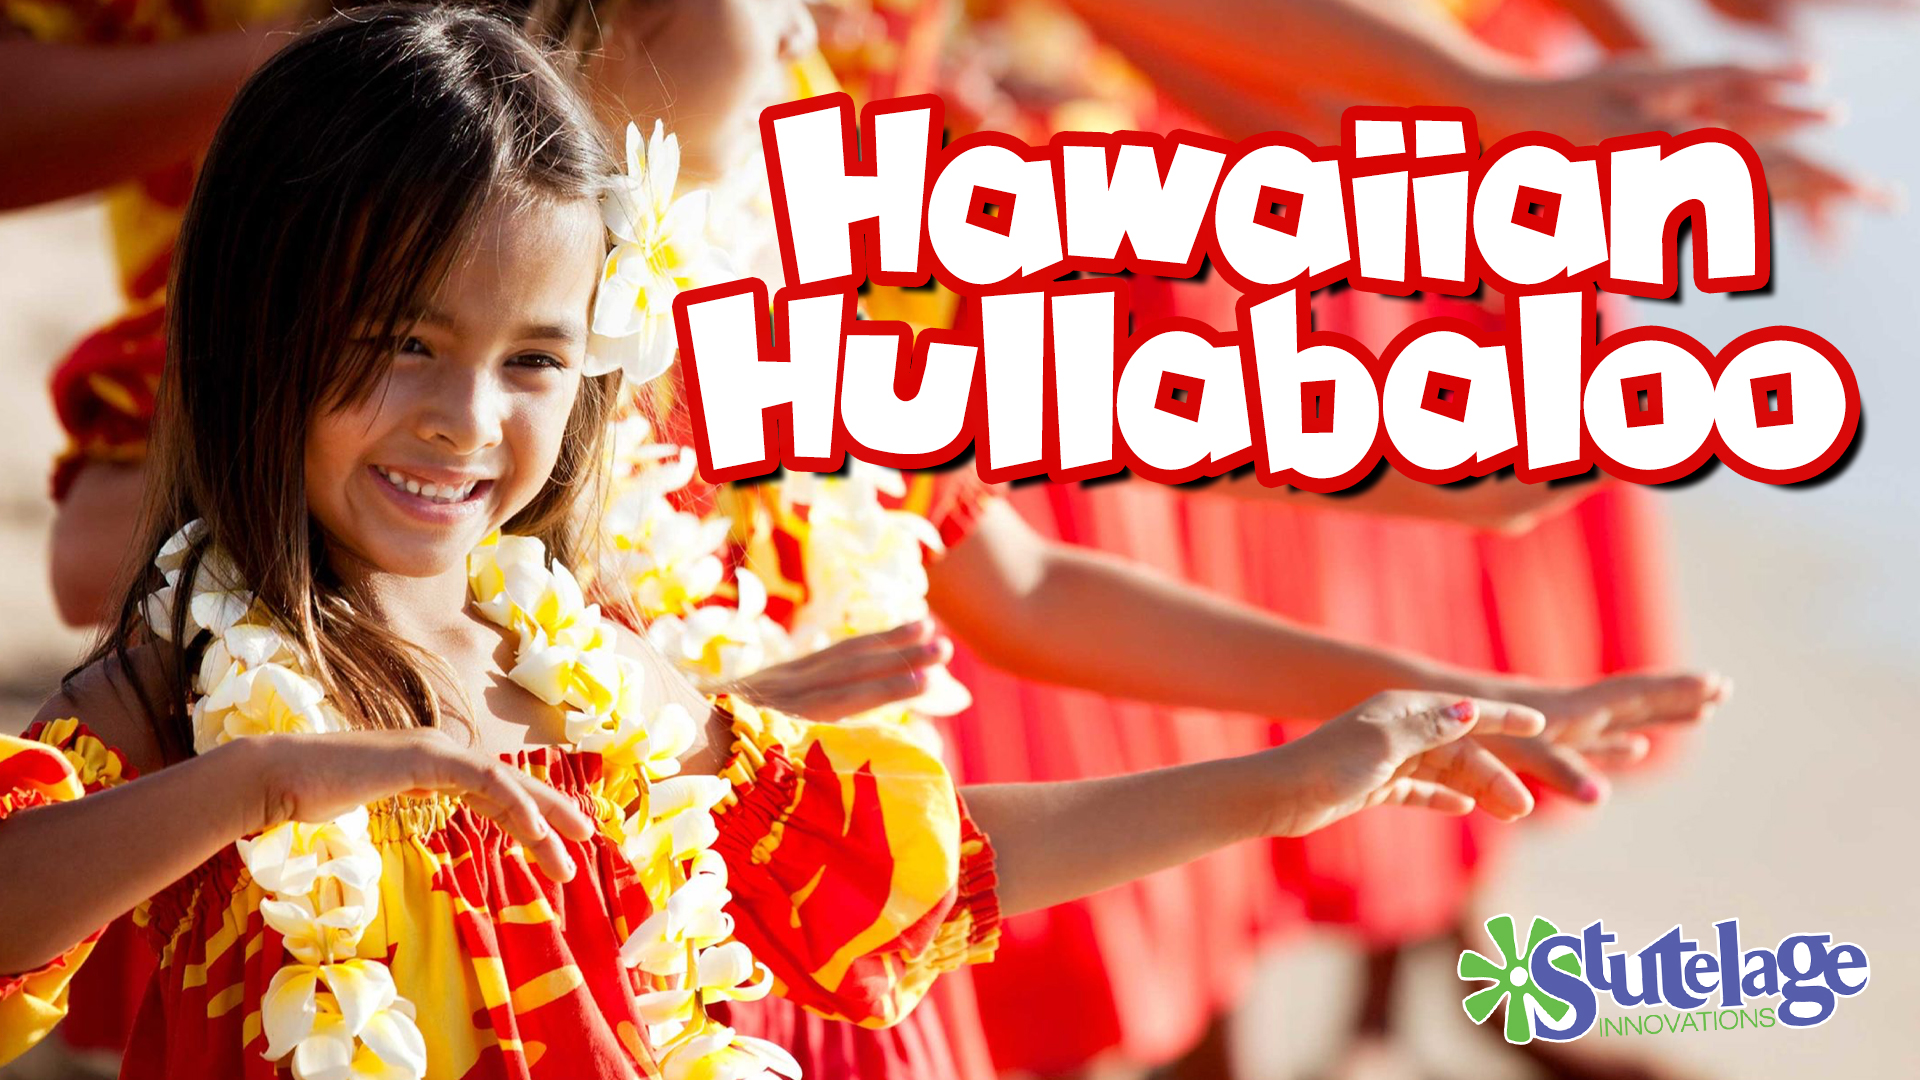 Hawaiian Hullabaloo Website